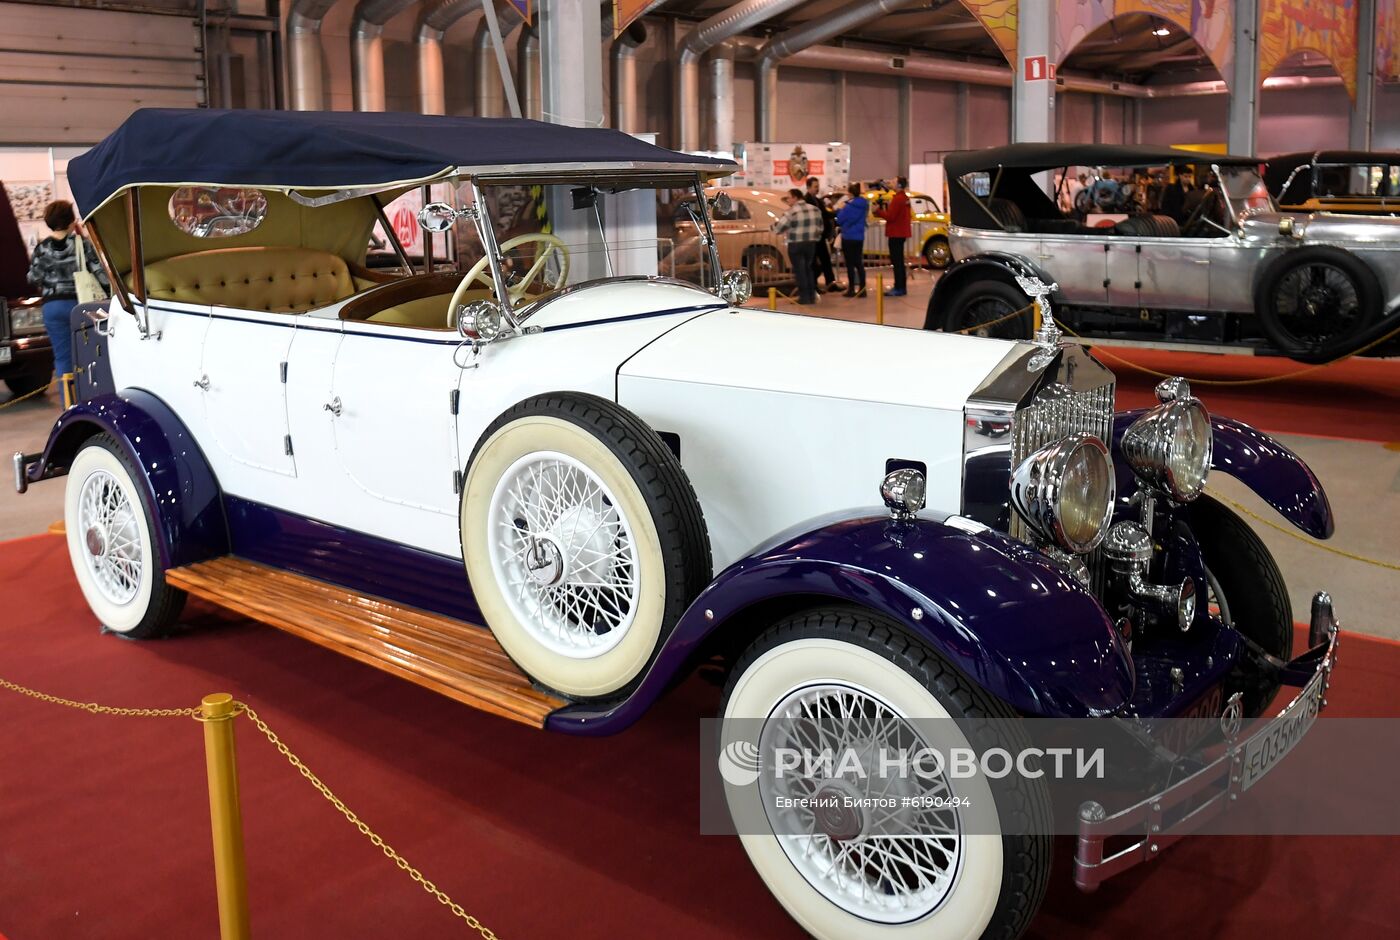 Открытие выставки ретро-автомобилей "Олдтаймер-Галерея"